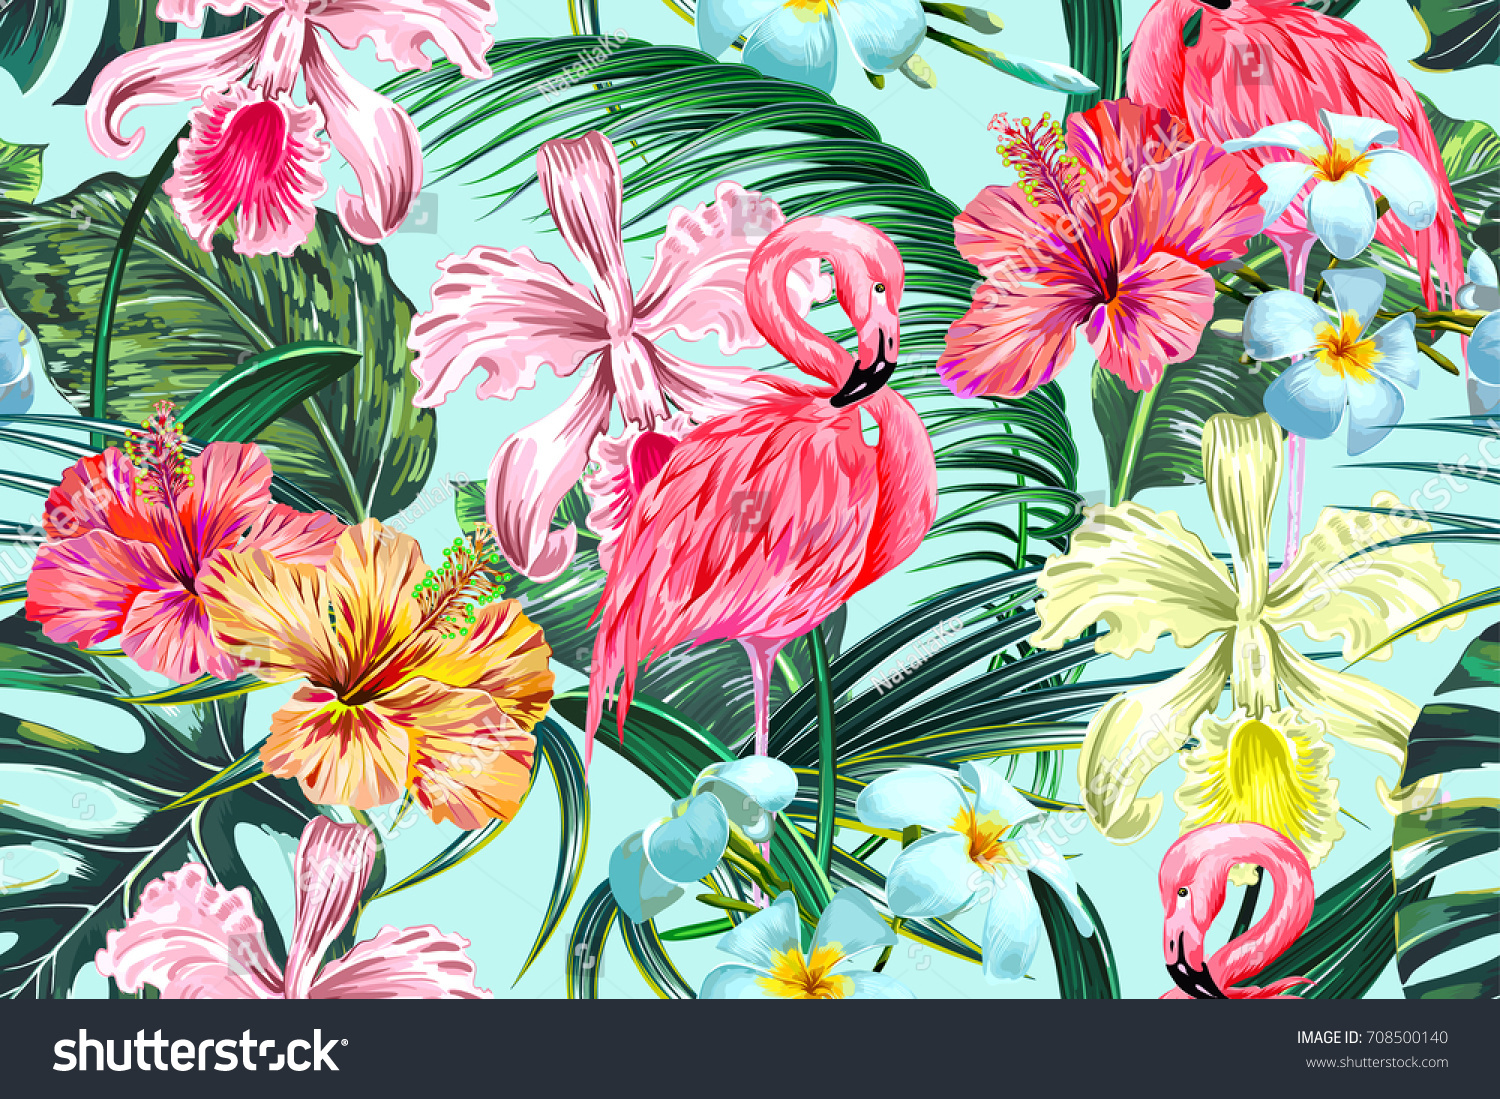 エキゾチックな花 ヤシの葉 ジャングルの葉 ハイビスカス ランの花 ピンクのフラミンゴスを持つ花柄 のシームレスなベクター画像熱帯のパターン背景 ボタニカル壁紙 ハワイ風のイラトス のベクター画像素材 ロイヤリティフリー